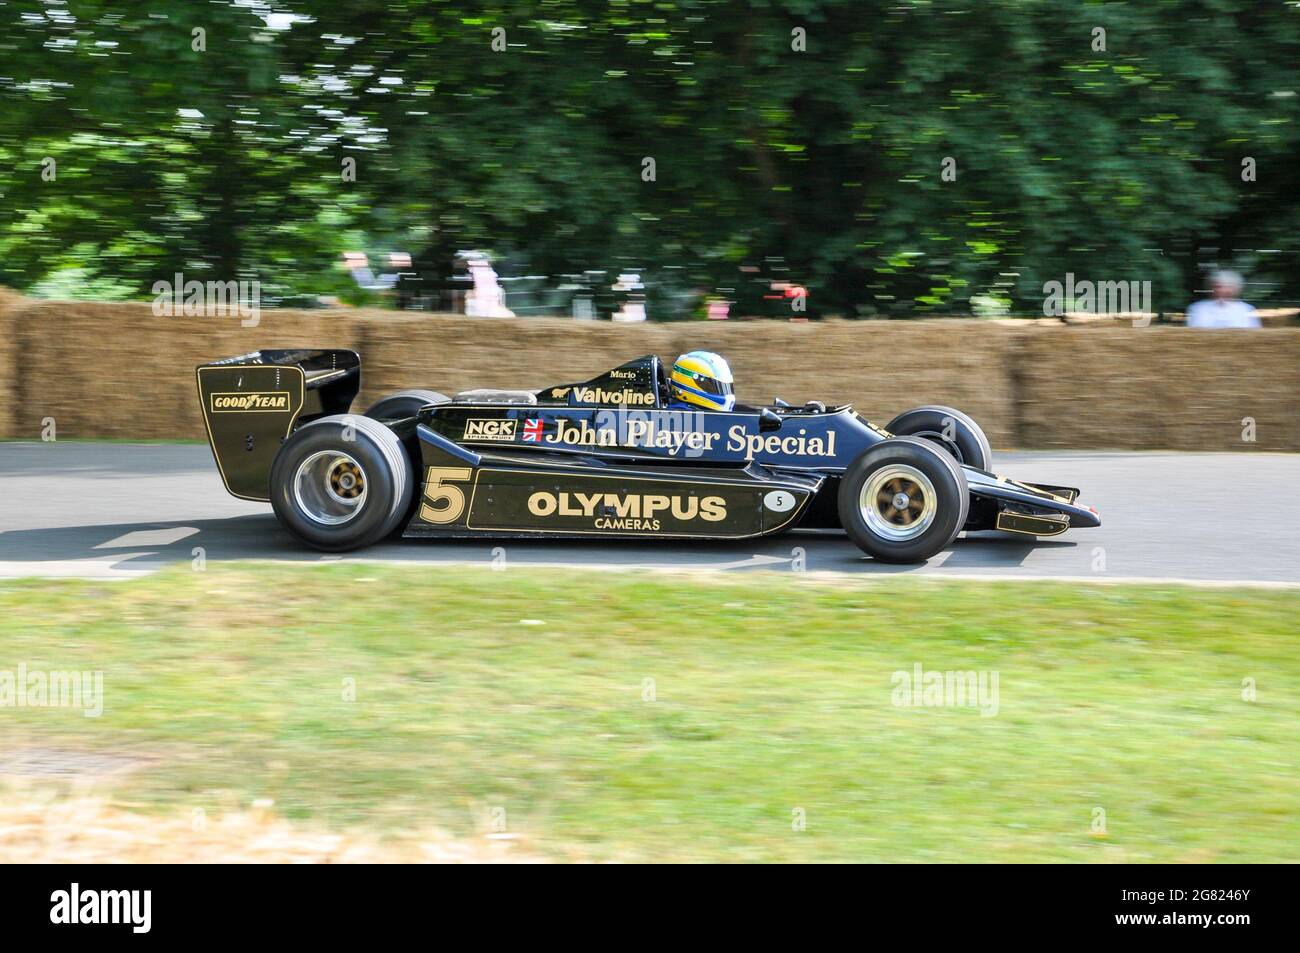 Lotus 79 Formule 1, Grand Prix, course en montée sur la colline au Goodwood Festival of Speed 2013. John Player Special Mk. IV de Mario Andretti Banque D'Images